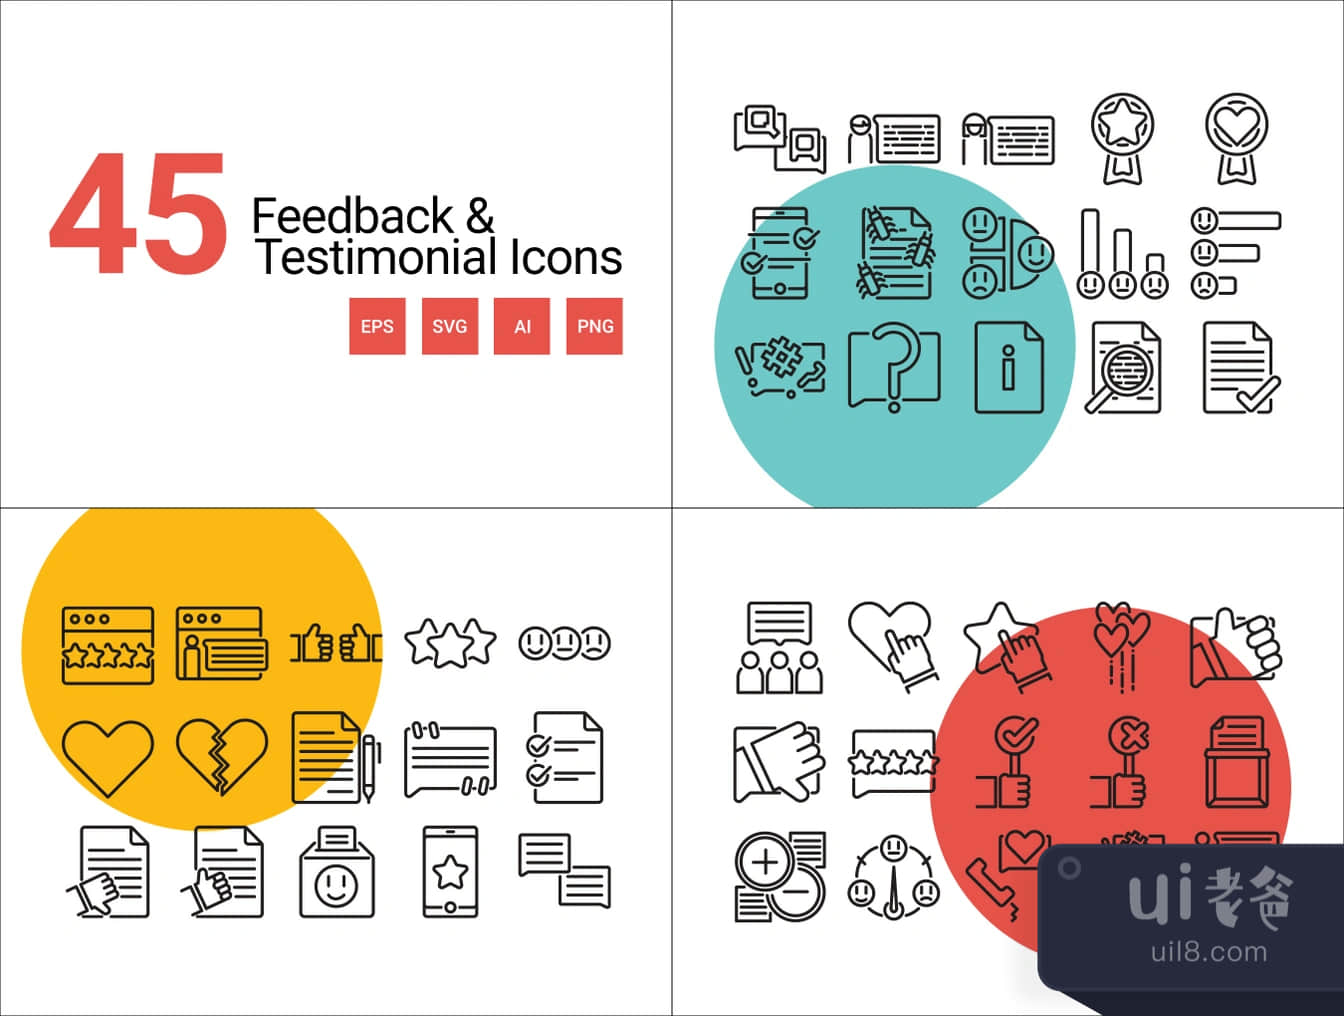 45个反馈和推荐图标 (45 Feedback & Testimonial Icons)插图